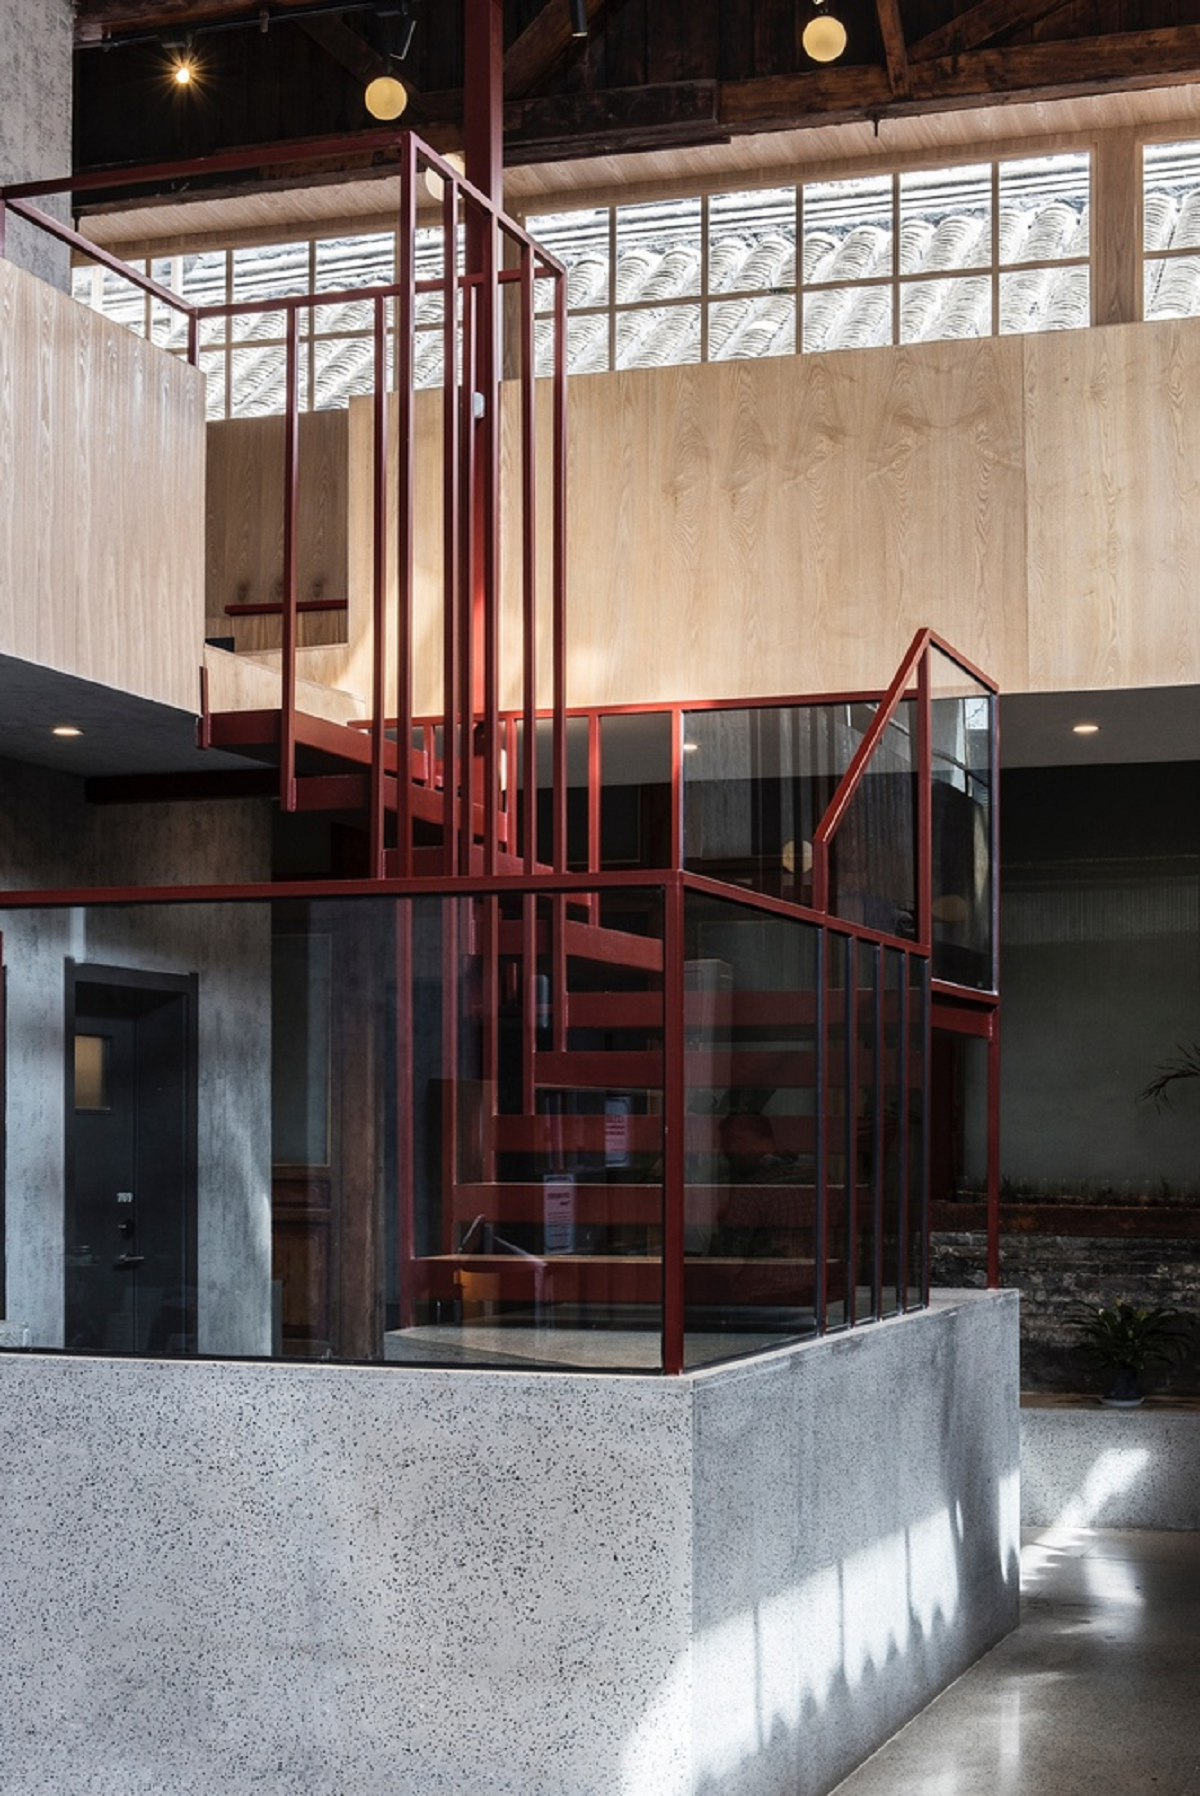 Dự án cải tạo khách sạn Well Well Well - Khi kiến trúc truyền thống chuyển mình dưới hơi thở đương đại | Fon Studio